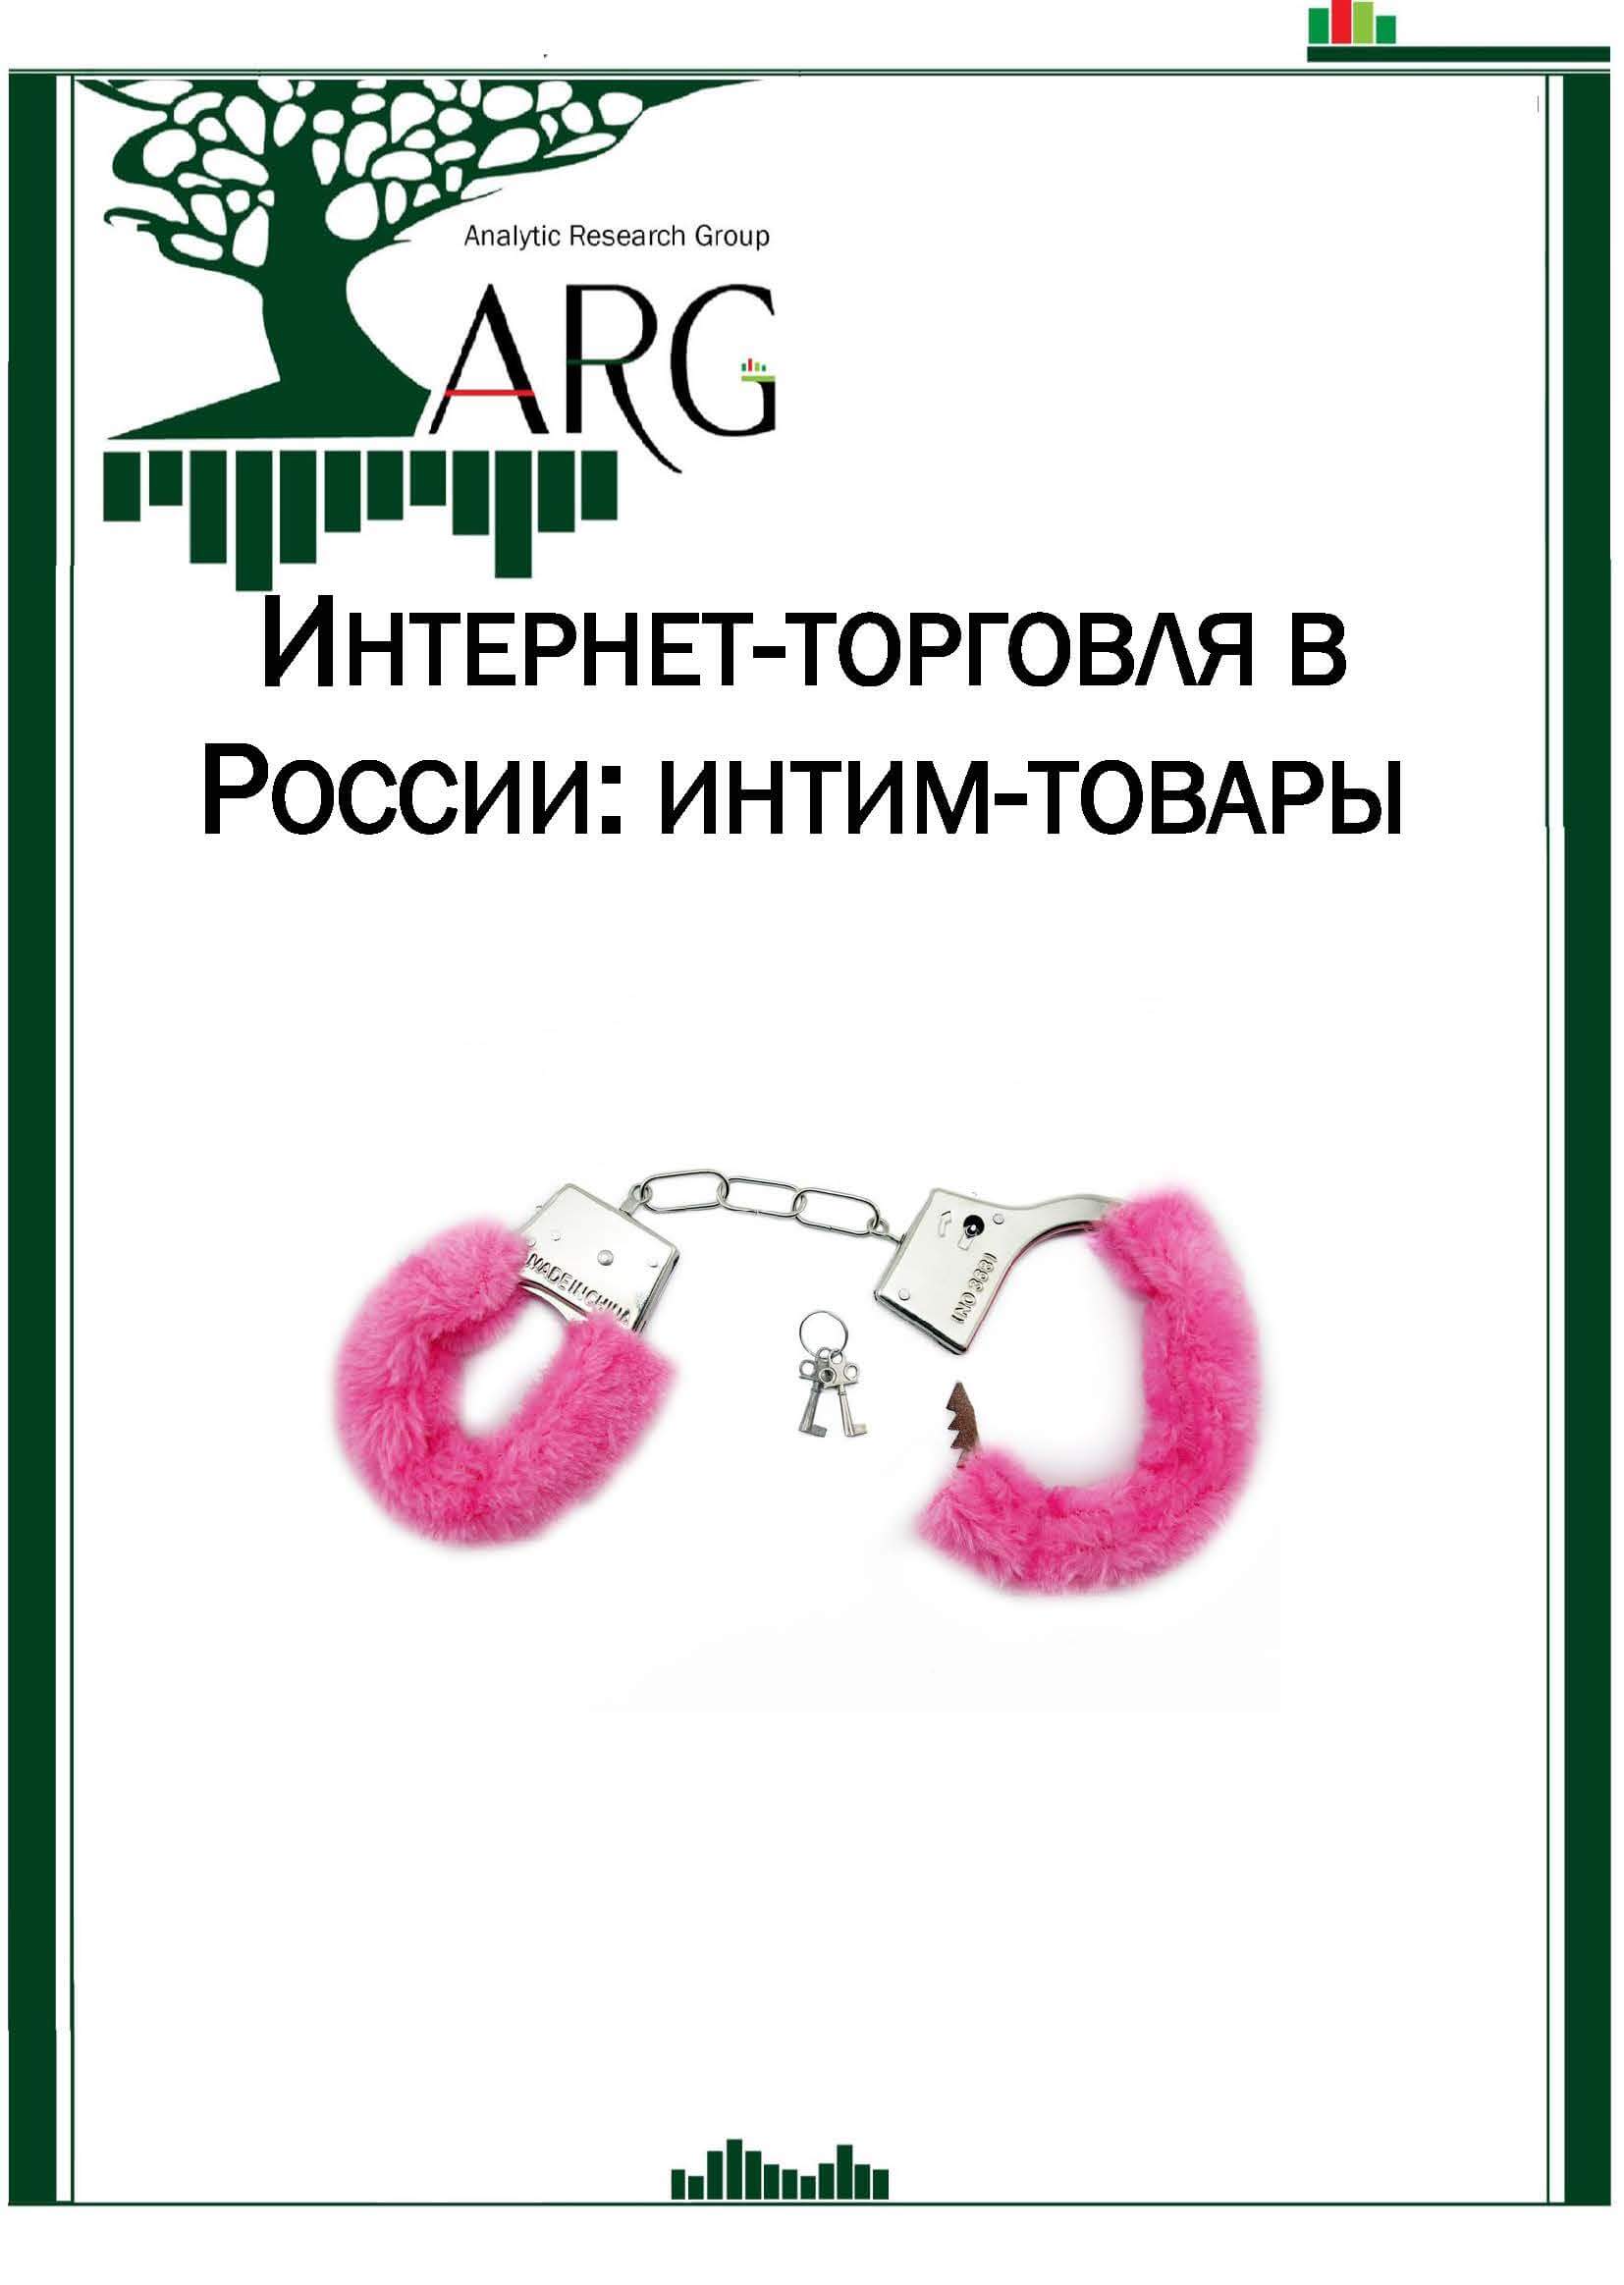 Eroshop Магазин 1 В России